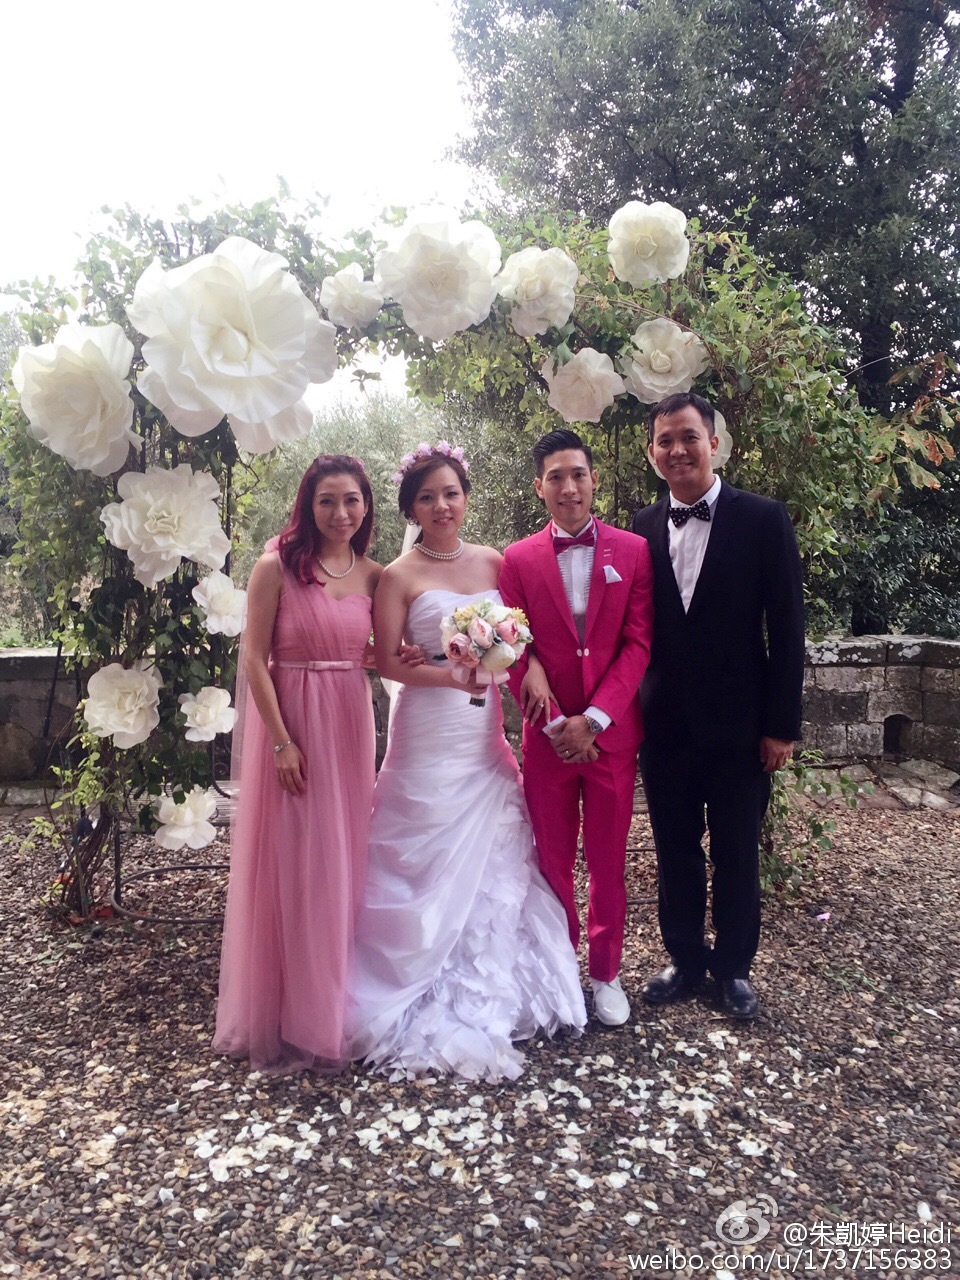 戚黛黛2016年與機師老公Calvin Yeung結婚。